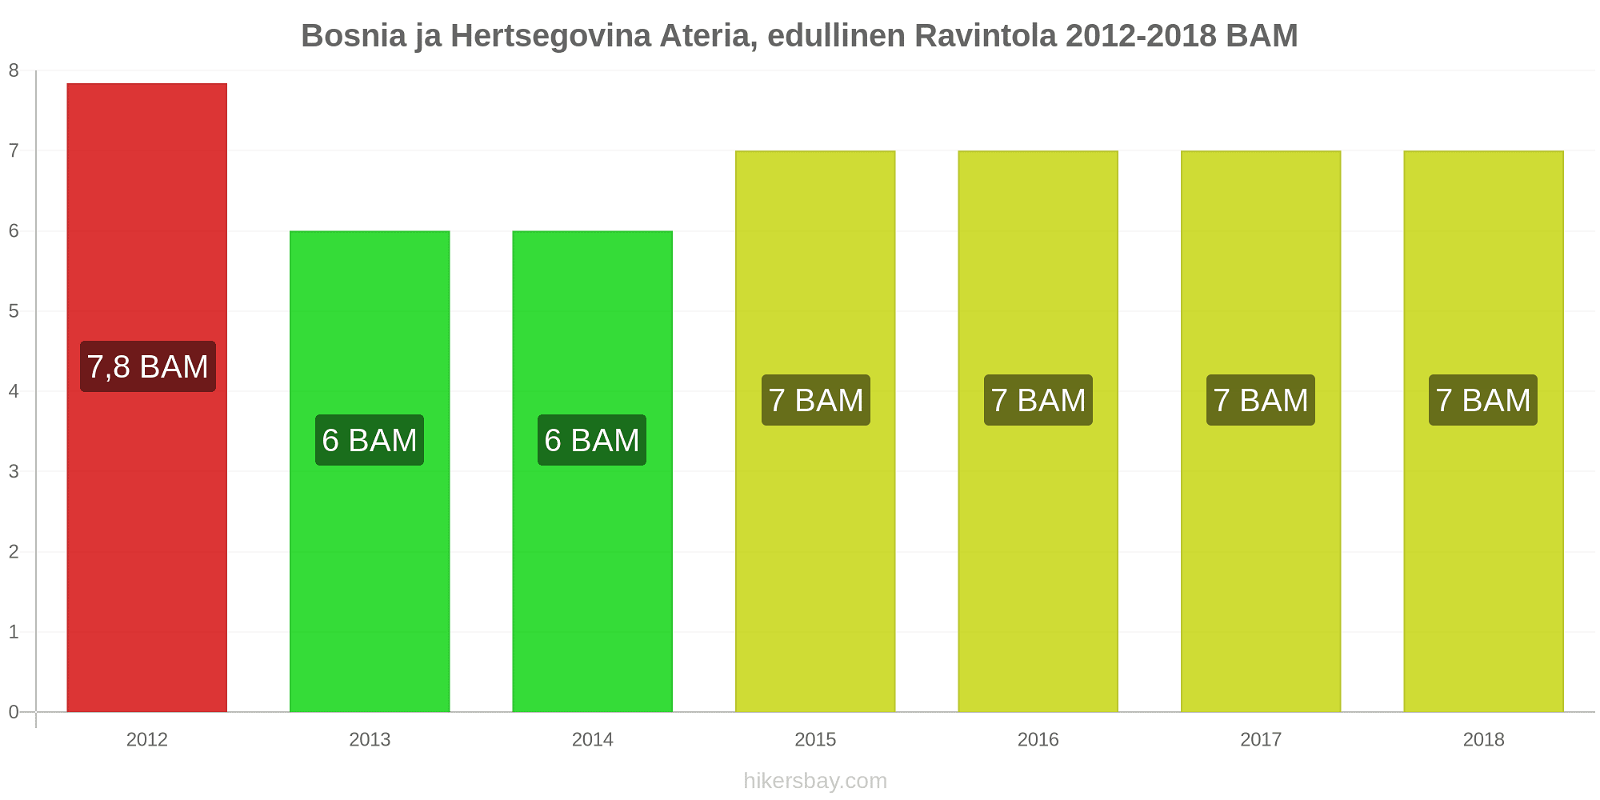 Bosnia ja Hertsegovina hintojen muutokset Ateria edullisessa ravintolassa hikersbay.com